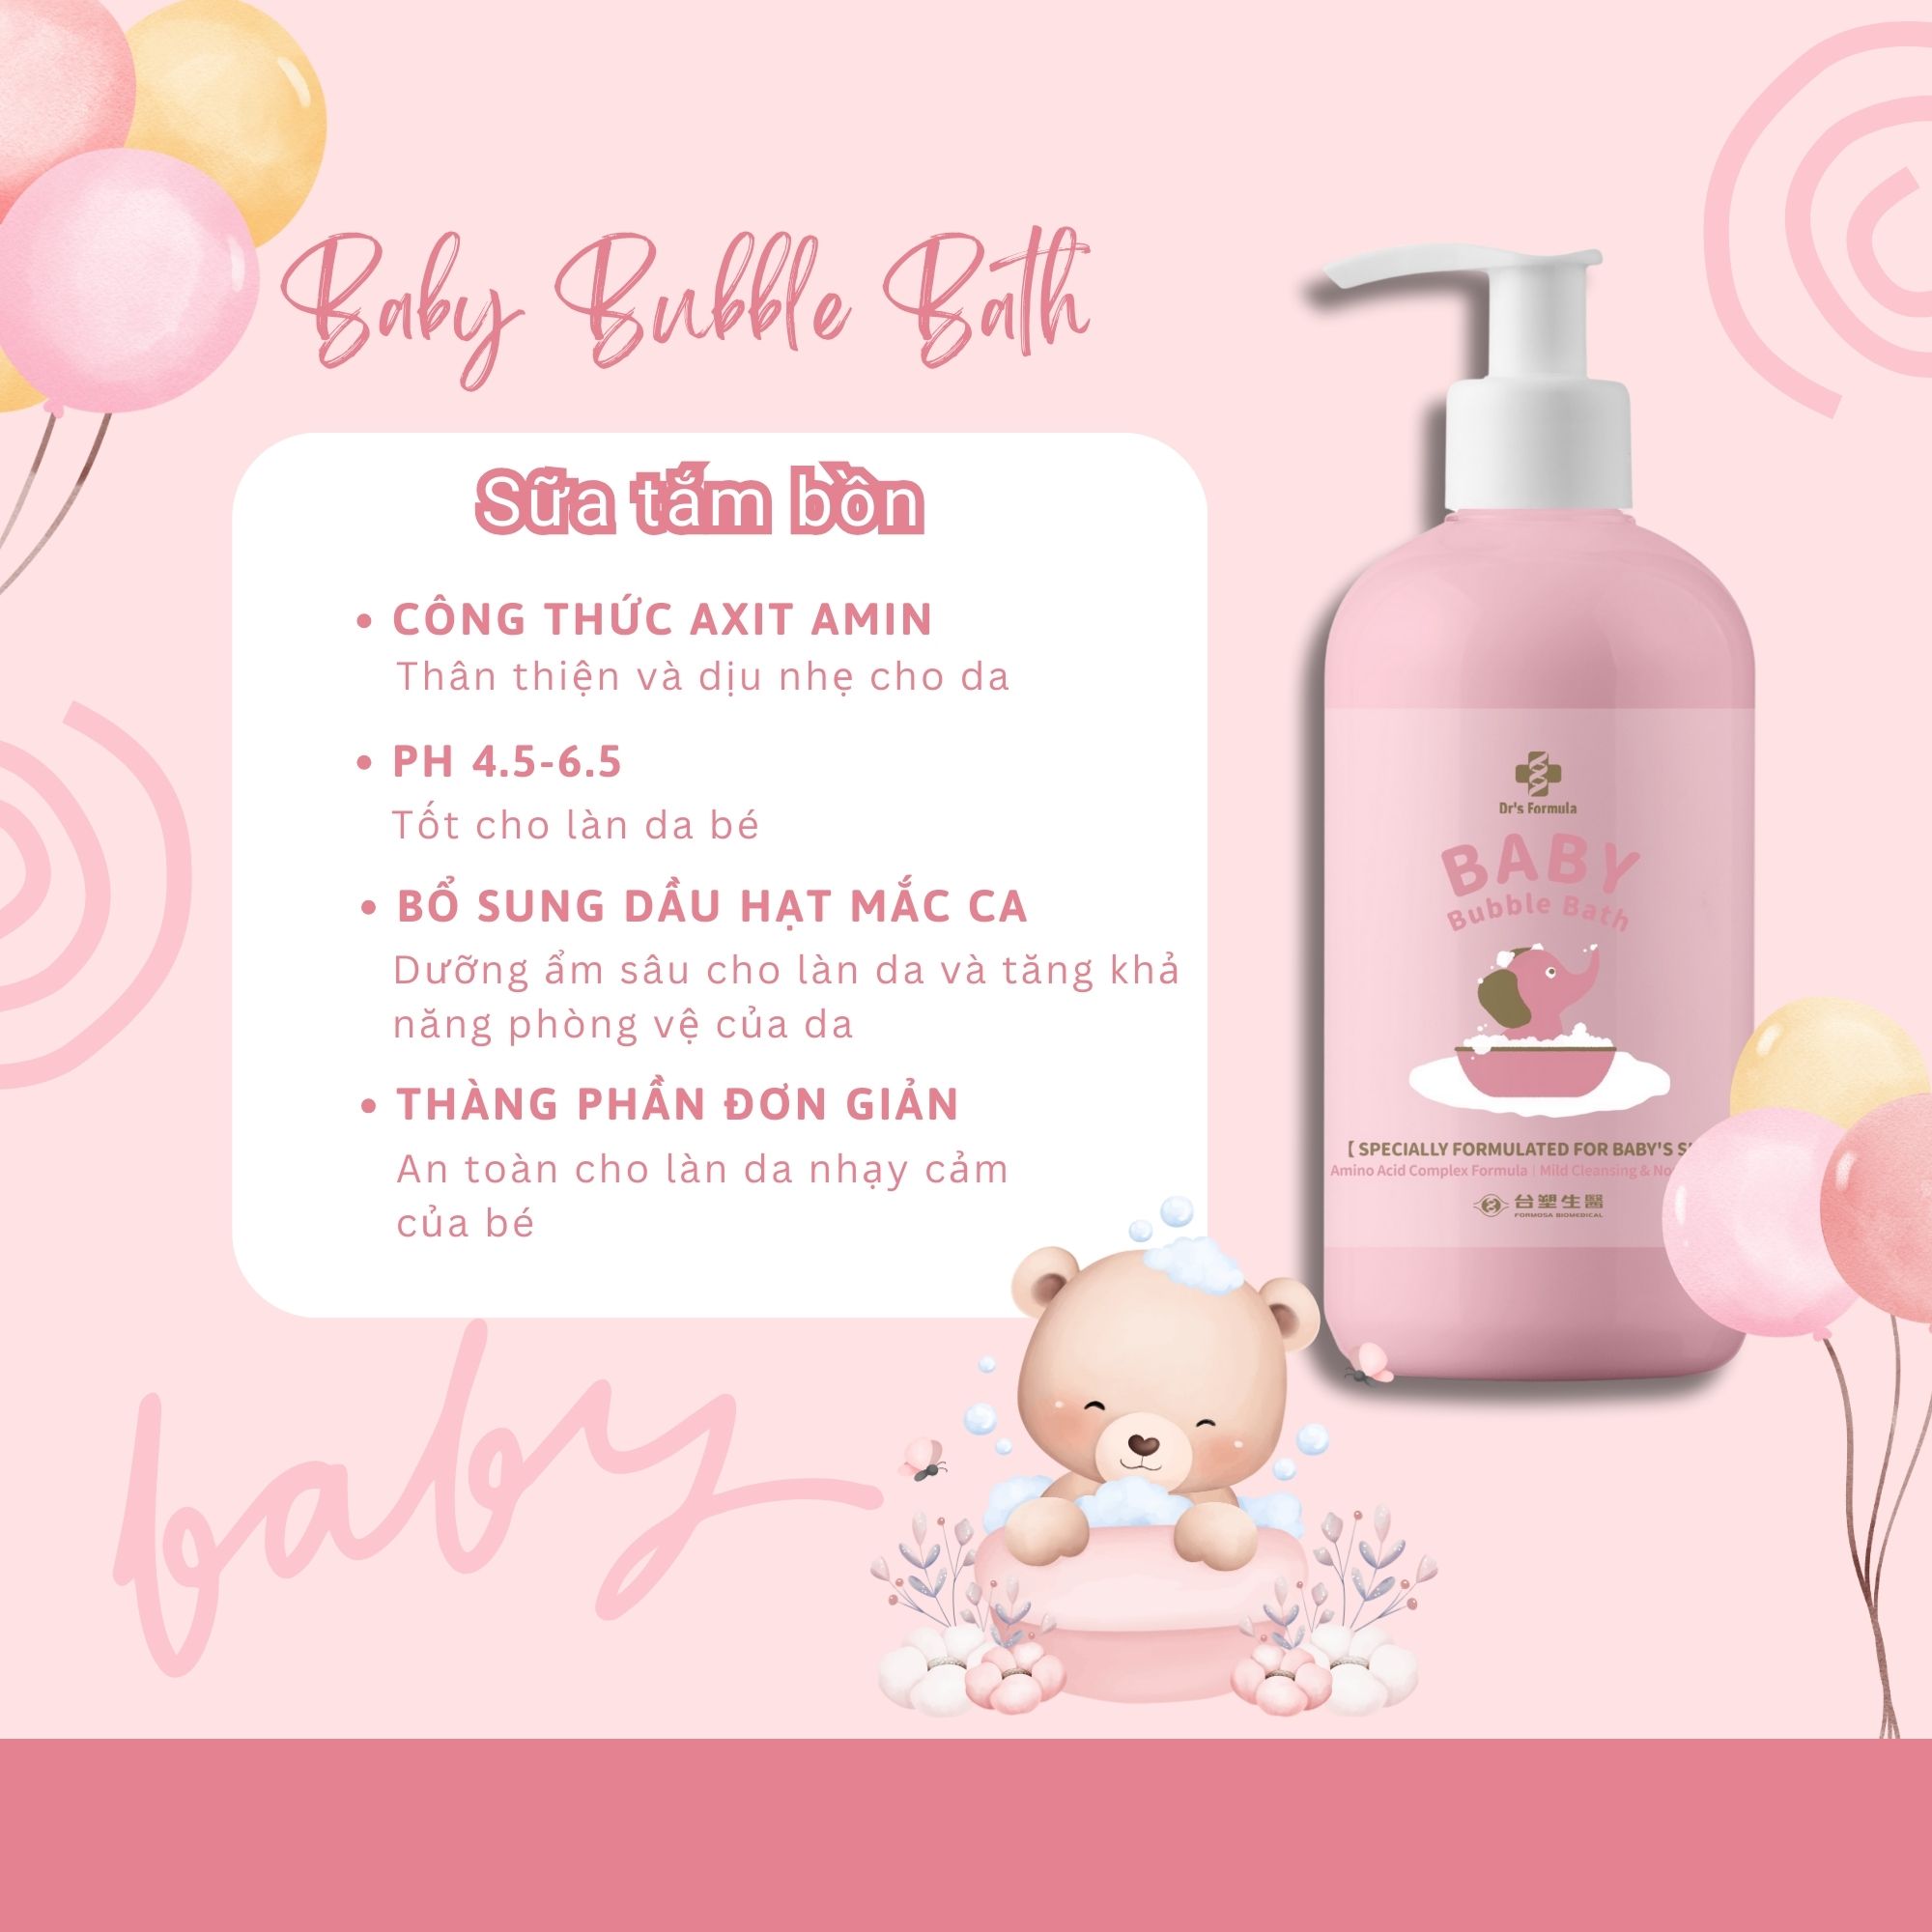 Sữa Tắm Bồn Tạo Bọt Dành Cho Bé Dr's Formula Baby Bubble Bath